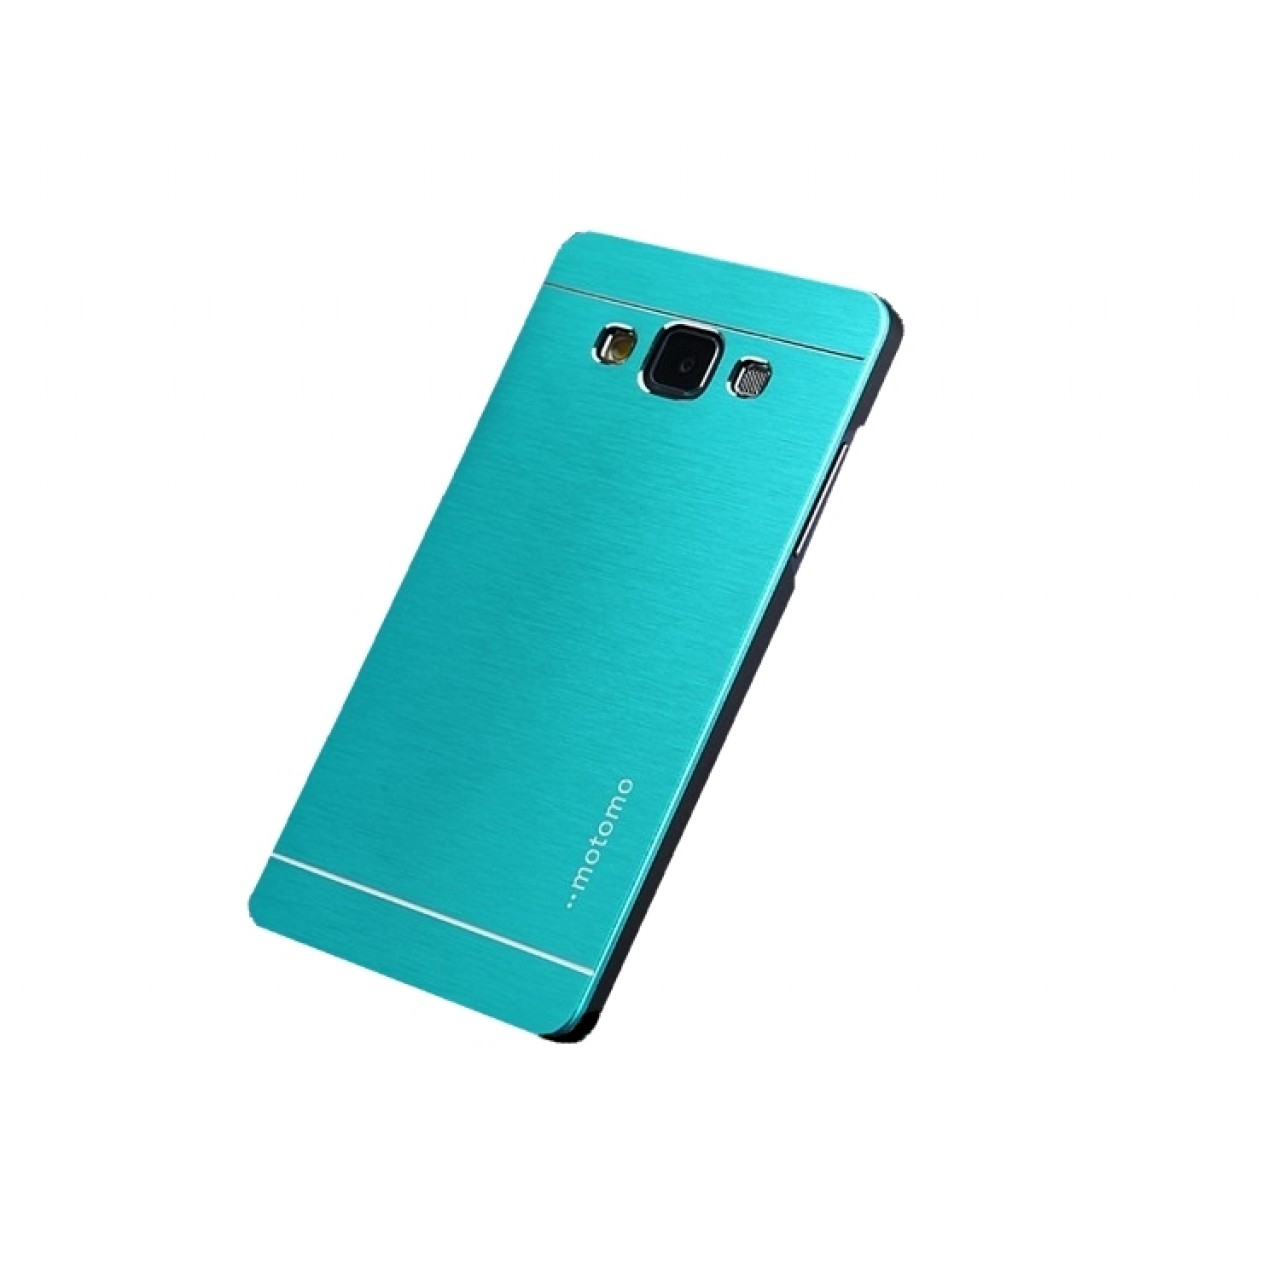 Θήκη Samsung Galaxy J7 2015 ( J700F) Αλουμινίου Motomo - Γαλάζιο - OEM